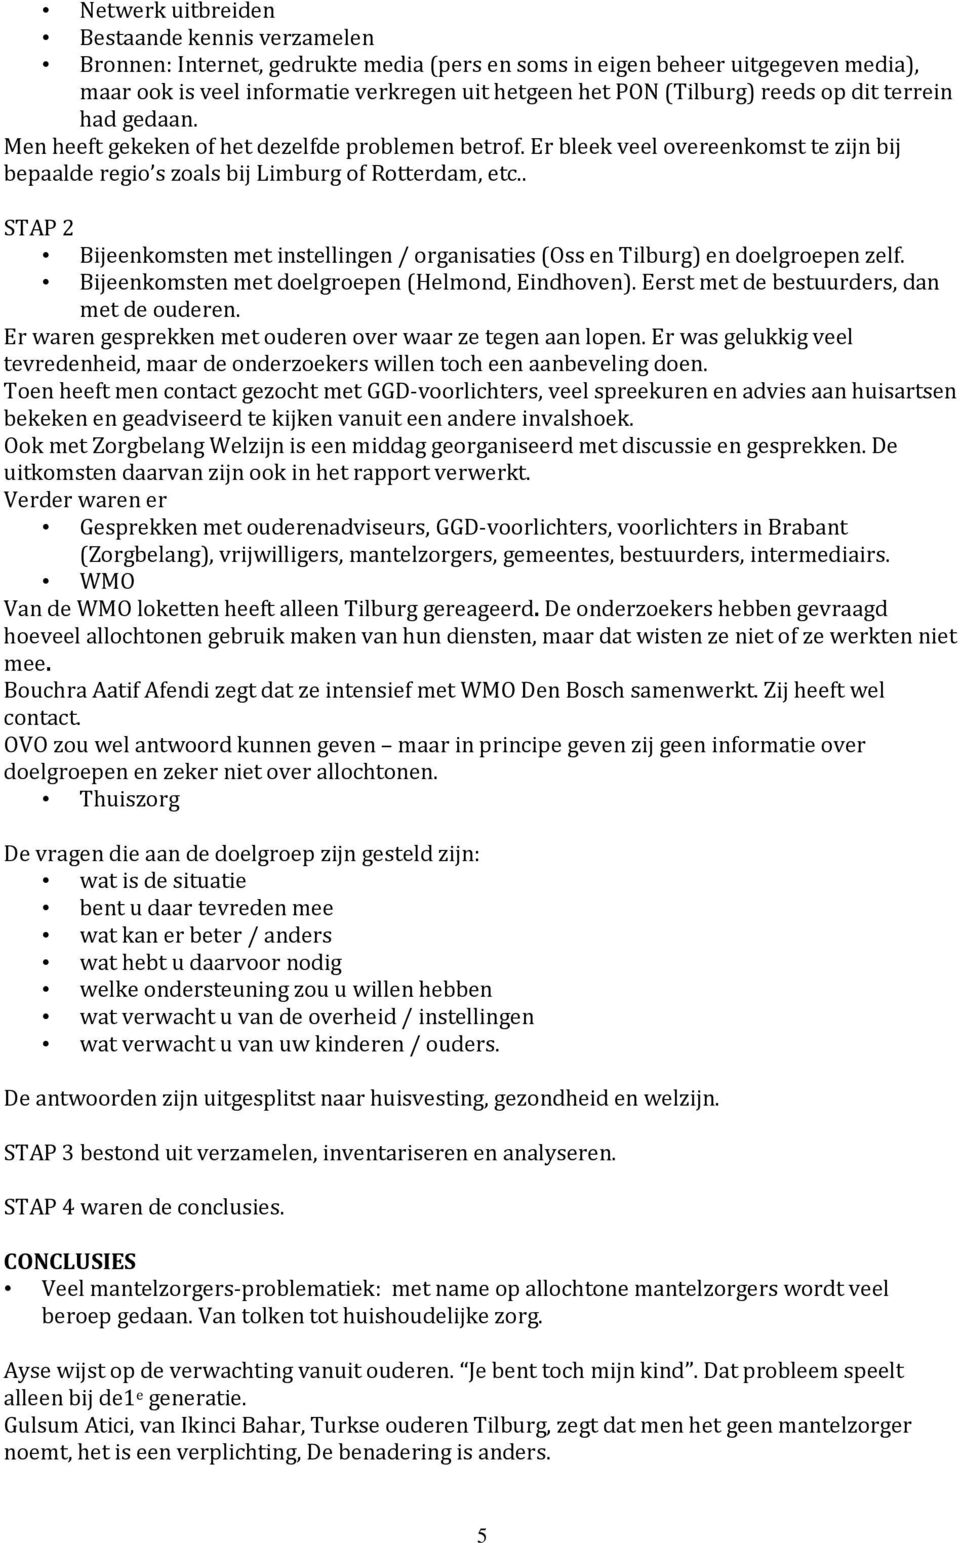 . STAP 2 Bijeenkomsten met instellingen / organisaties (Oss en Tilburg) en doelgroepen zelf. Bijeenkomsten met doelgroepen (Helmond, Eindhoven). Eerst met de bestuurders, dan met de ouderen.